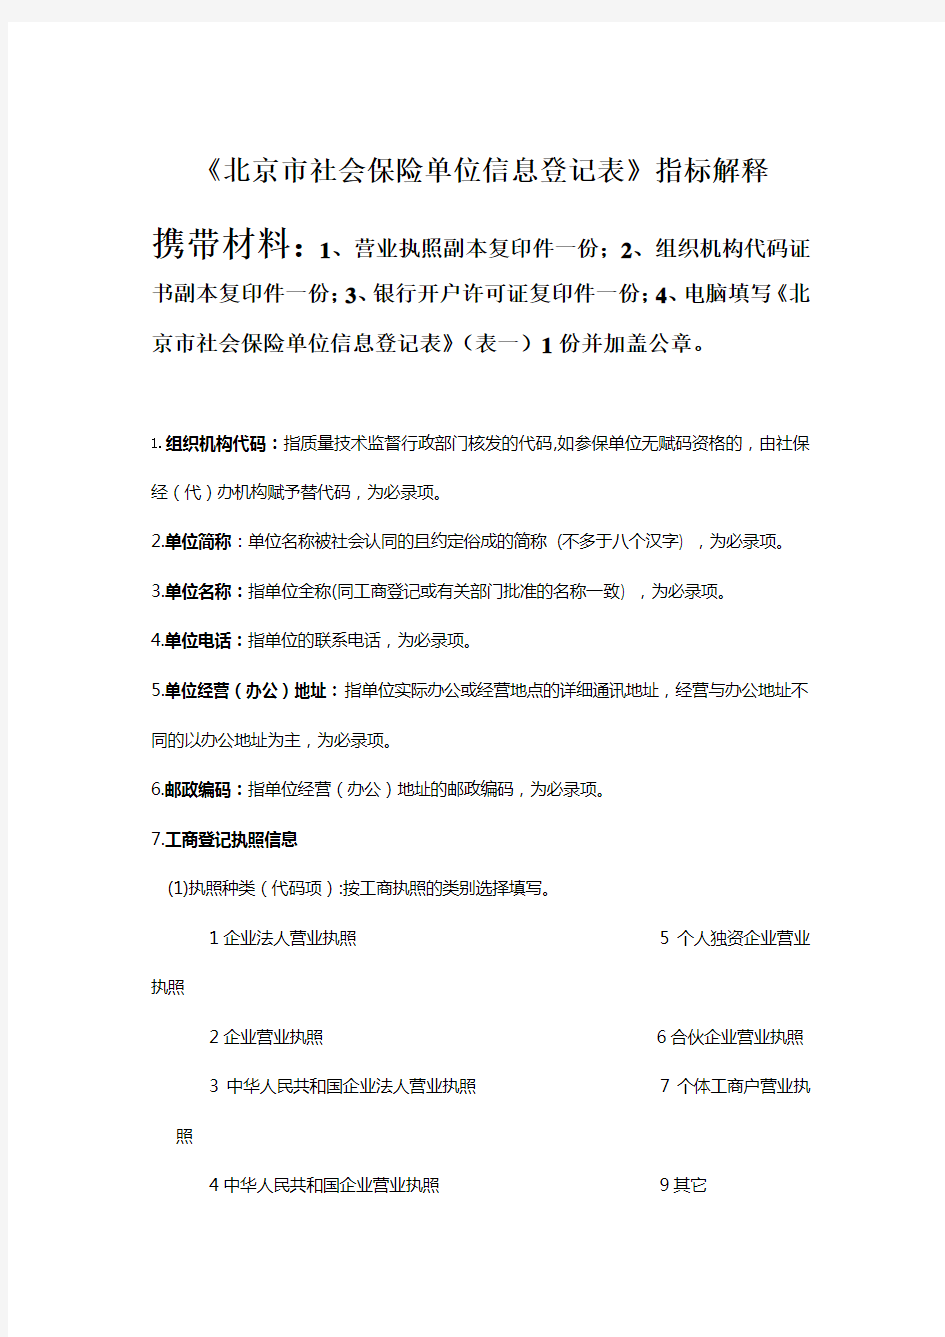 《北京市社会保险单位信息登记表》填表说明及所需材料.doc